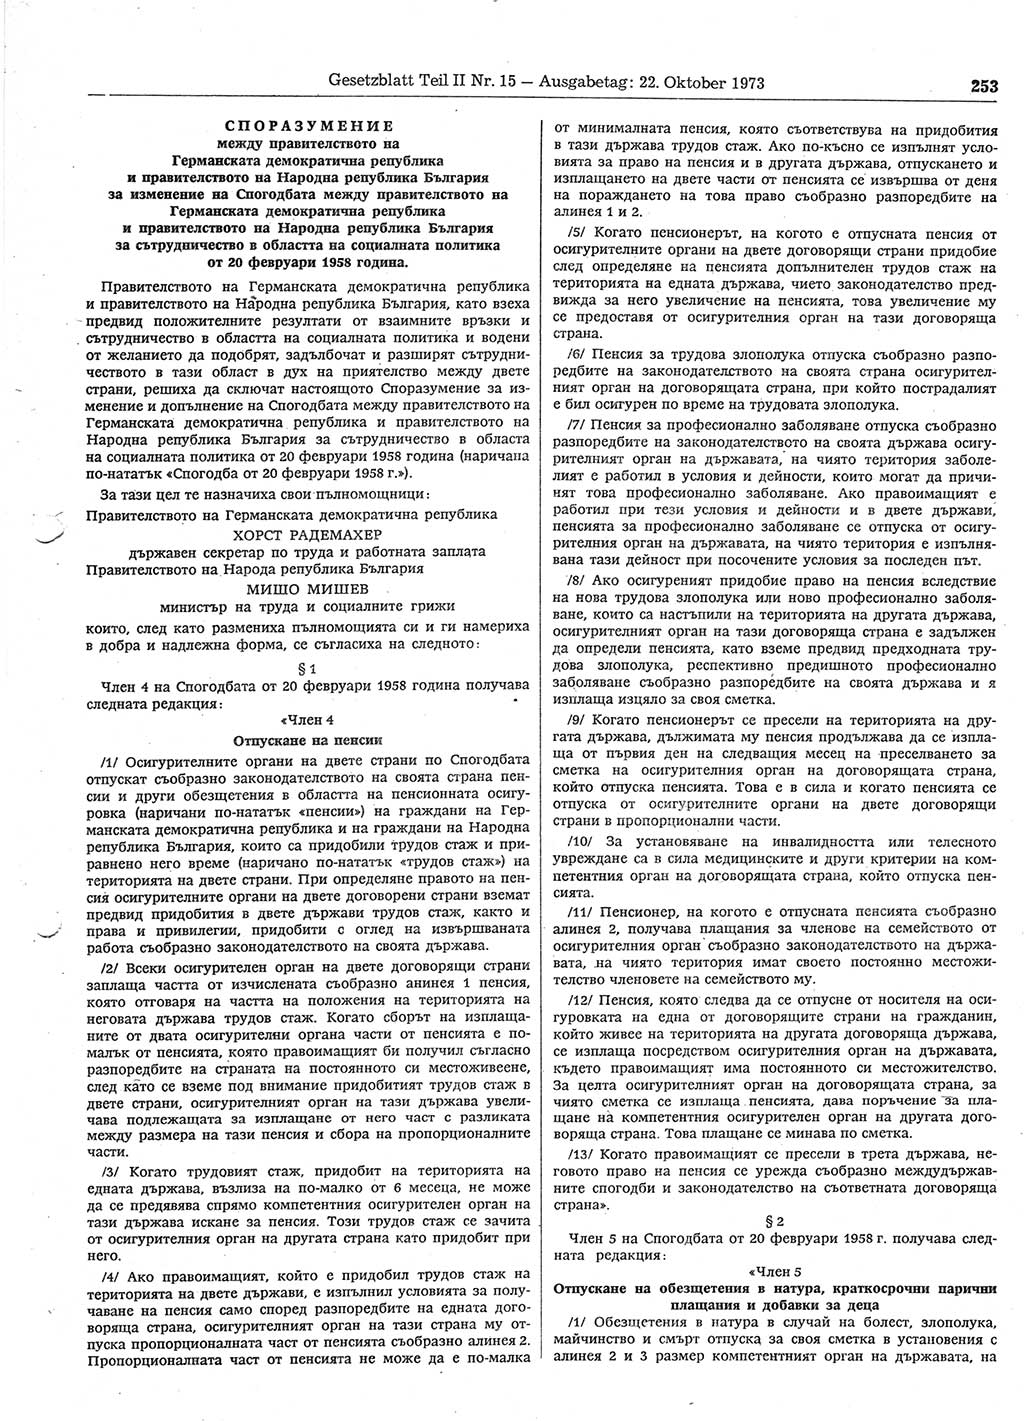 Gesetzblatt (GBl.) der Deutschen Demokratischen Republik (DDR) Teil ⅠⅠ 1973, Seite 253 (GBl. DDR ⅠⅠ 1973, S. 253)